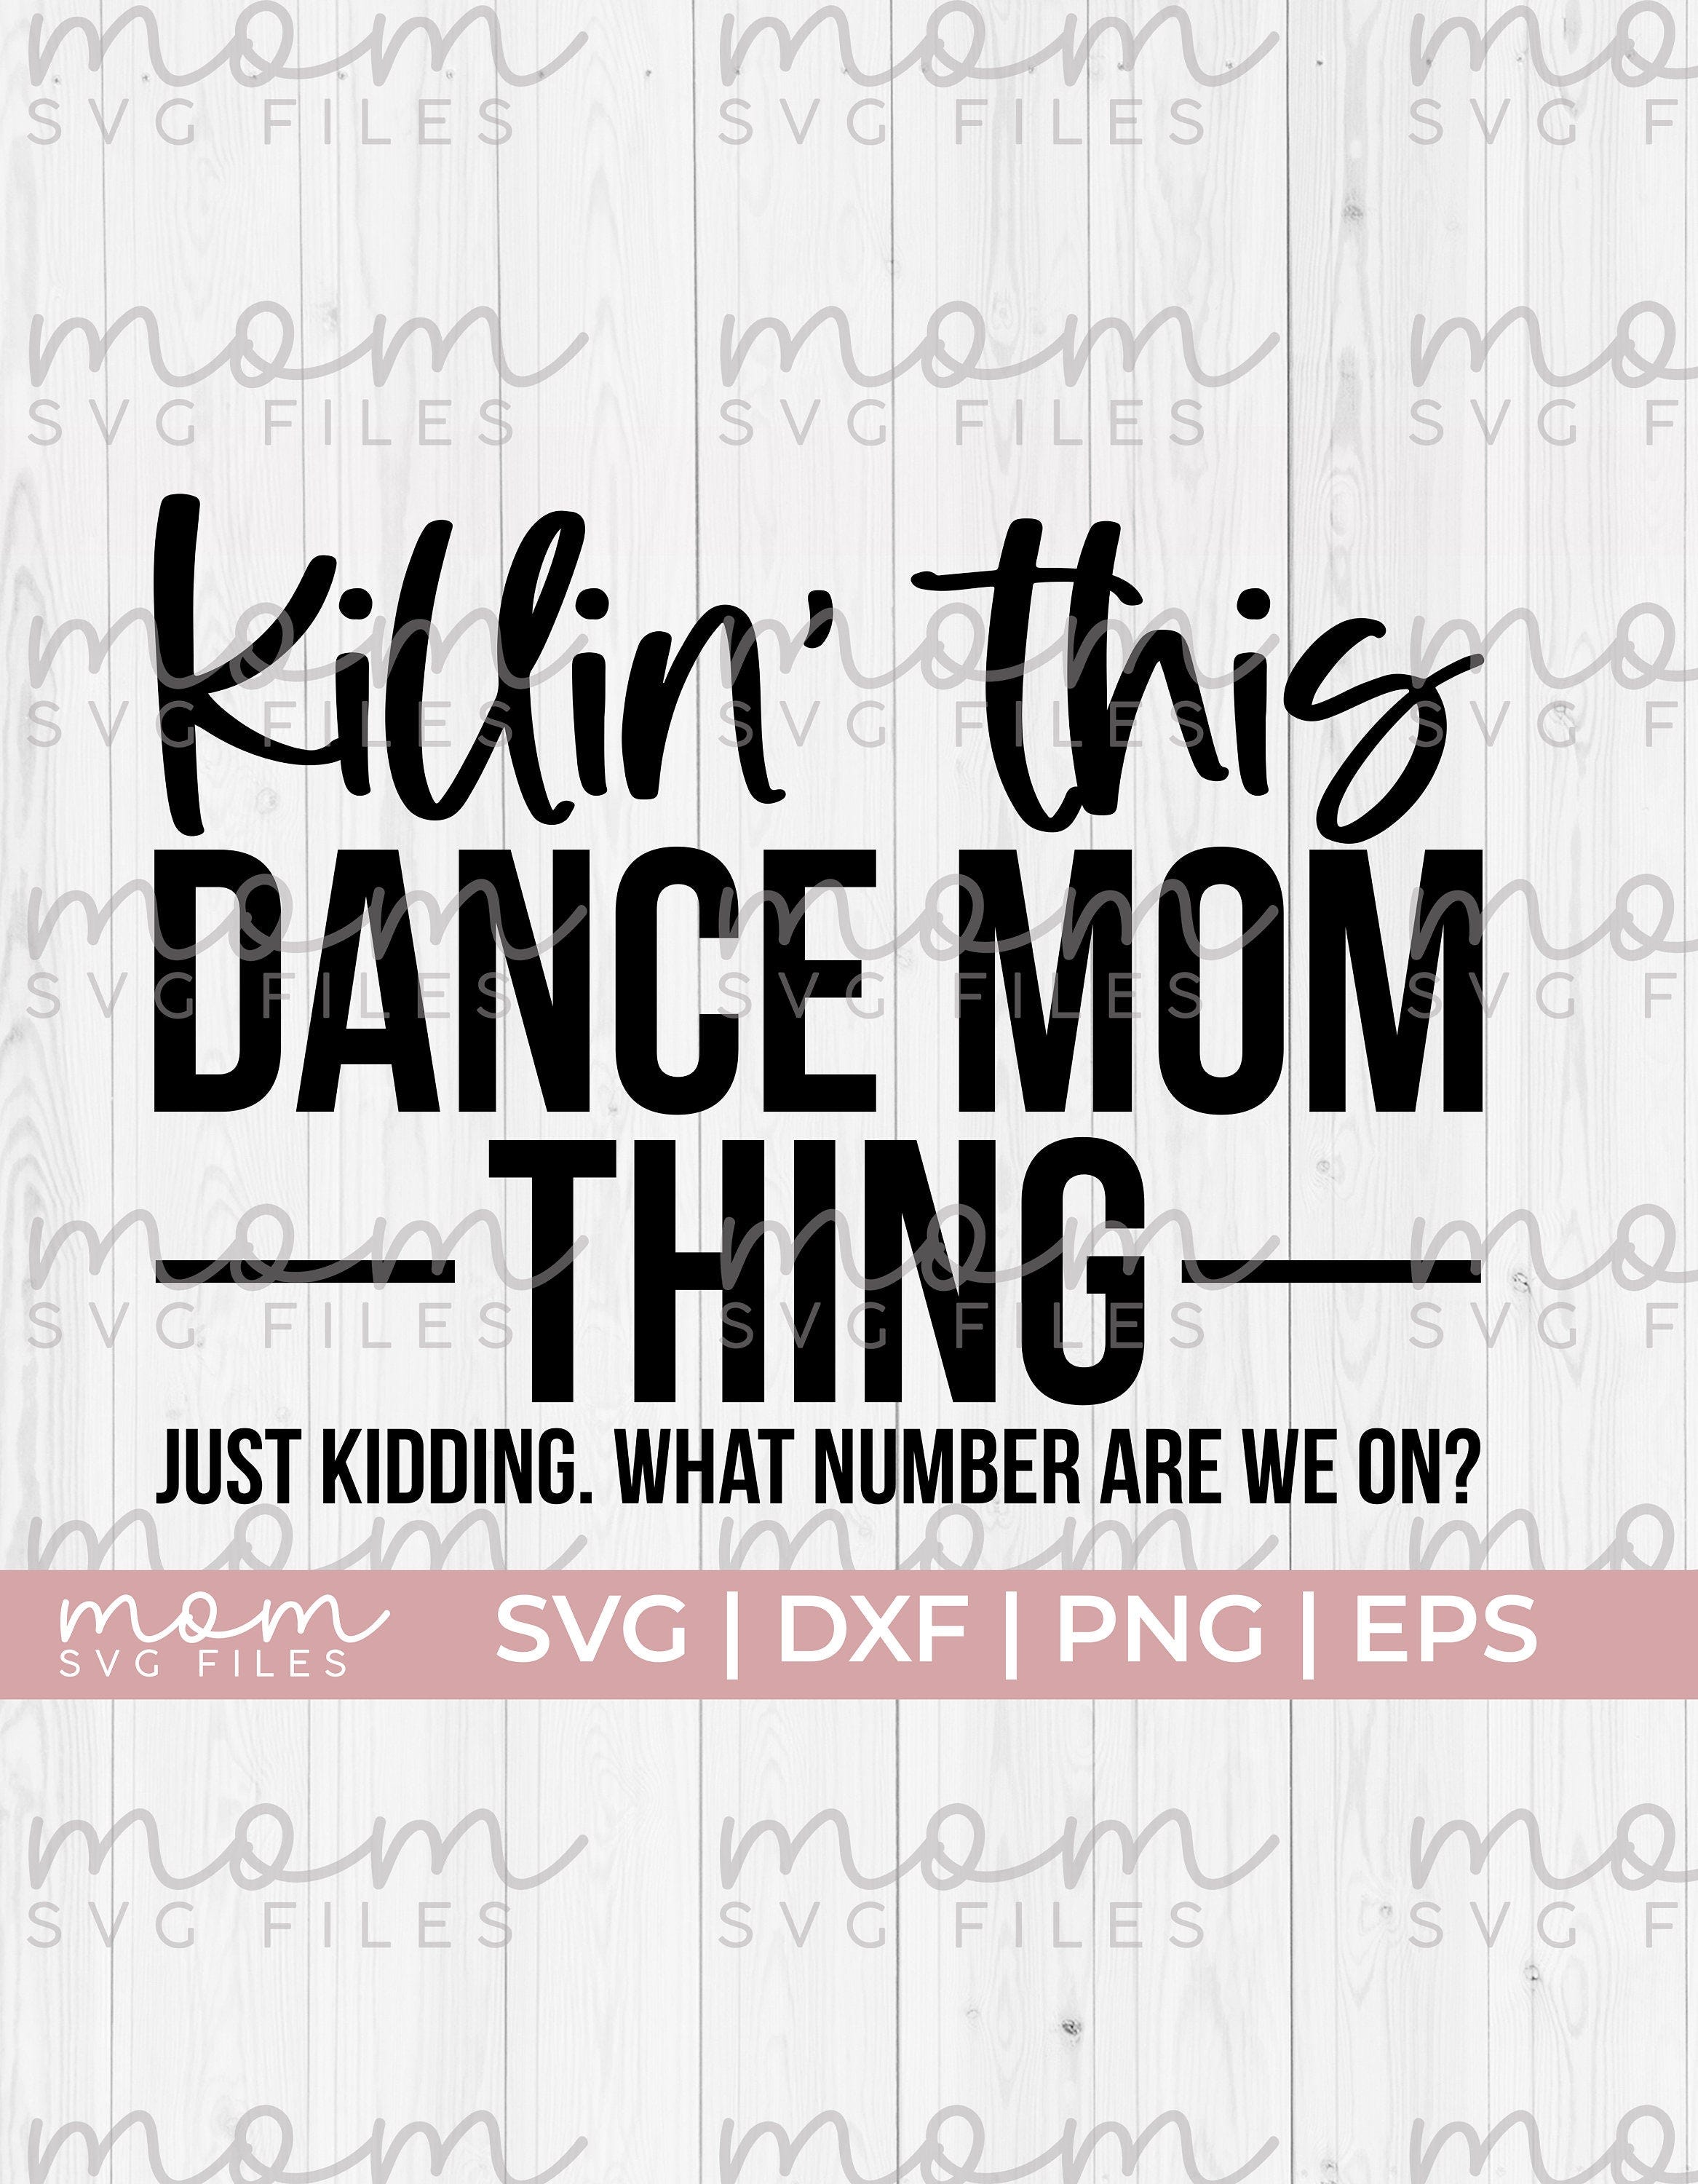 dance mom svg, what number are we on svg, dance mama svg, dance mom squad svg, dancing svg, love dancing svg, dance life svg, ballet svg